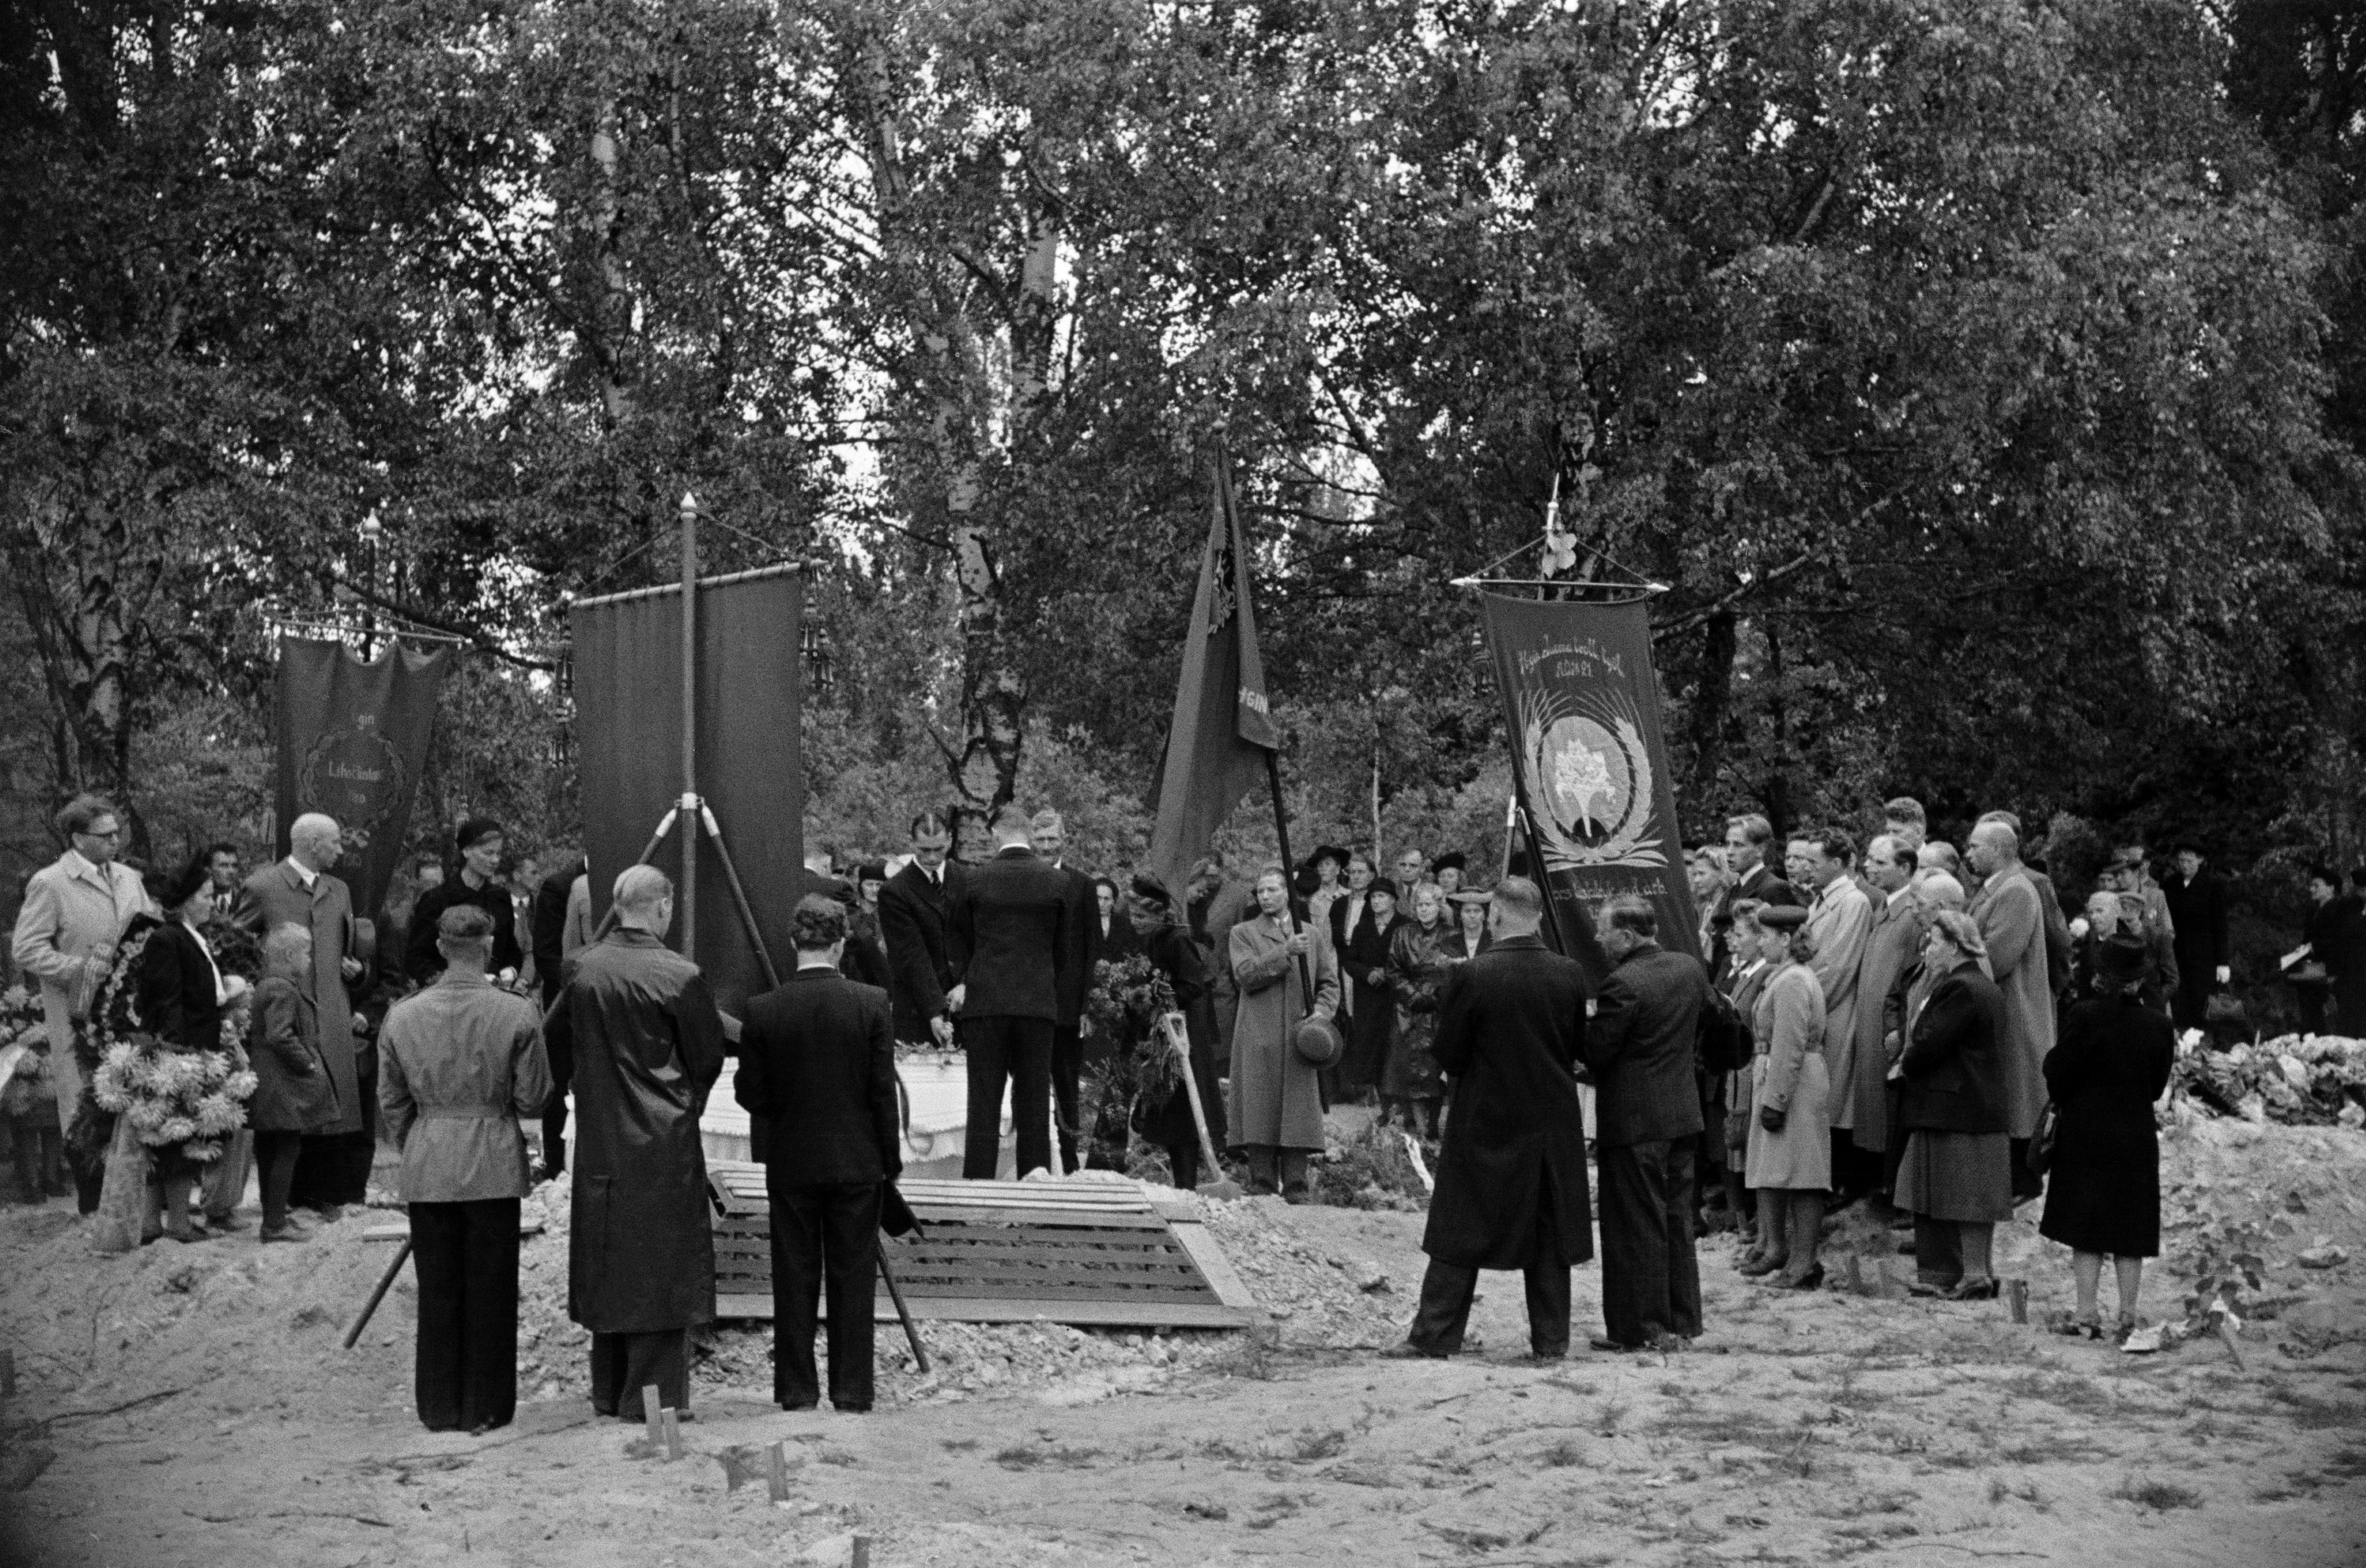 Pohjoinen hautausmaa (=Malmin hautausmaa), Arvi Heinon hautajaiset. Arkkua lasketaan hautaan, miehet kantavat ammattiyhdistysten lippuja. Oikealla Helsingin juomateollisuustyöläisten ammattiosasto 21:n lippu.